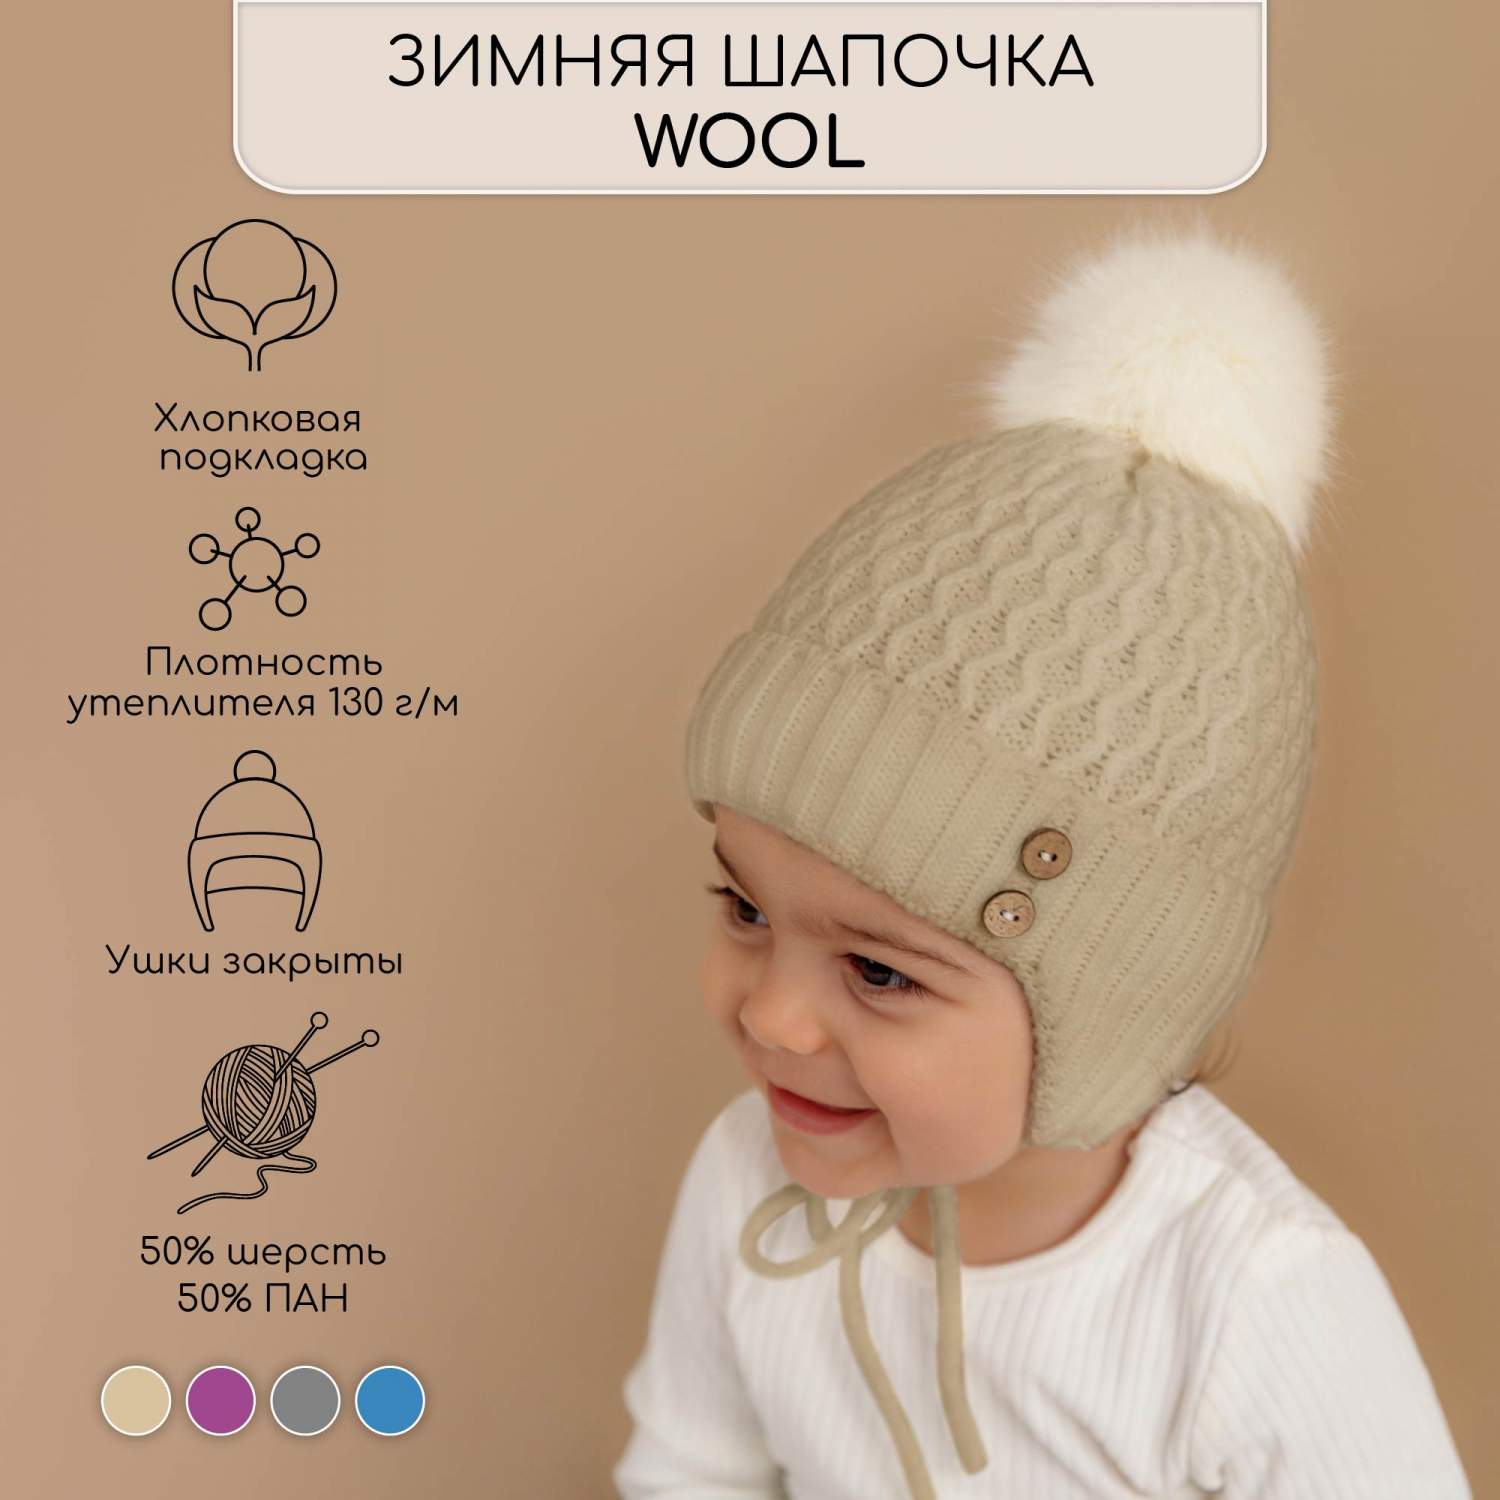 Бесплатная выкройка шапочки для ребенка